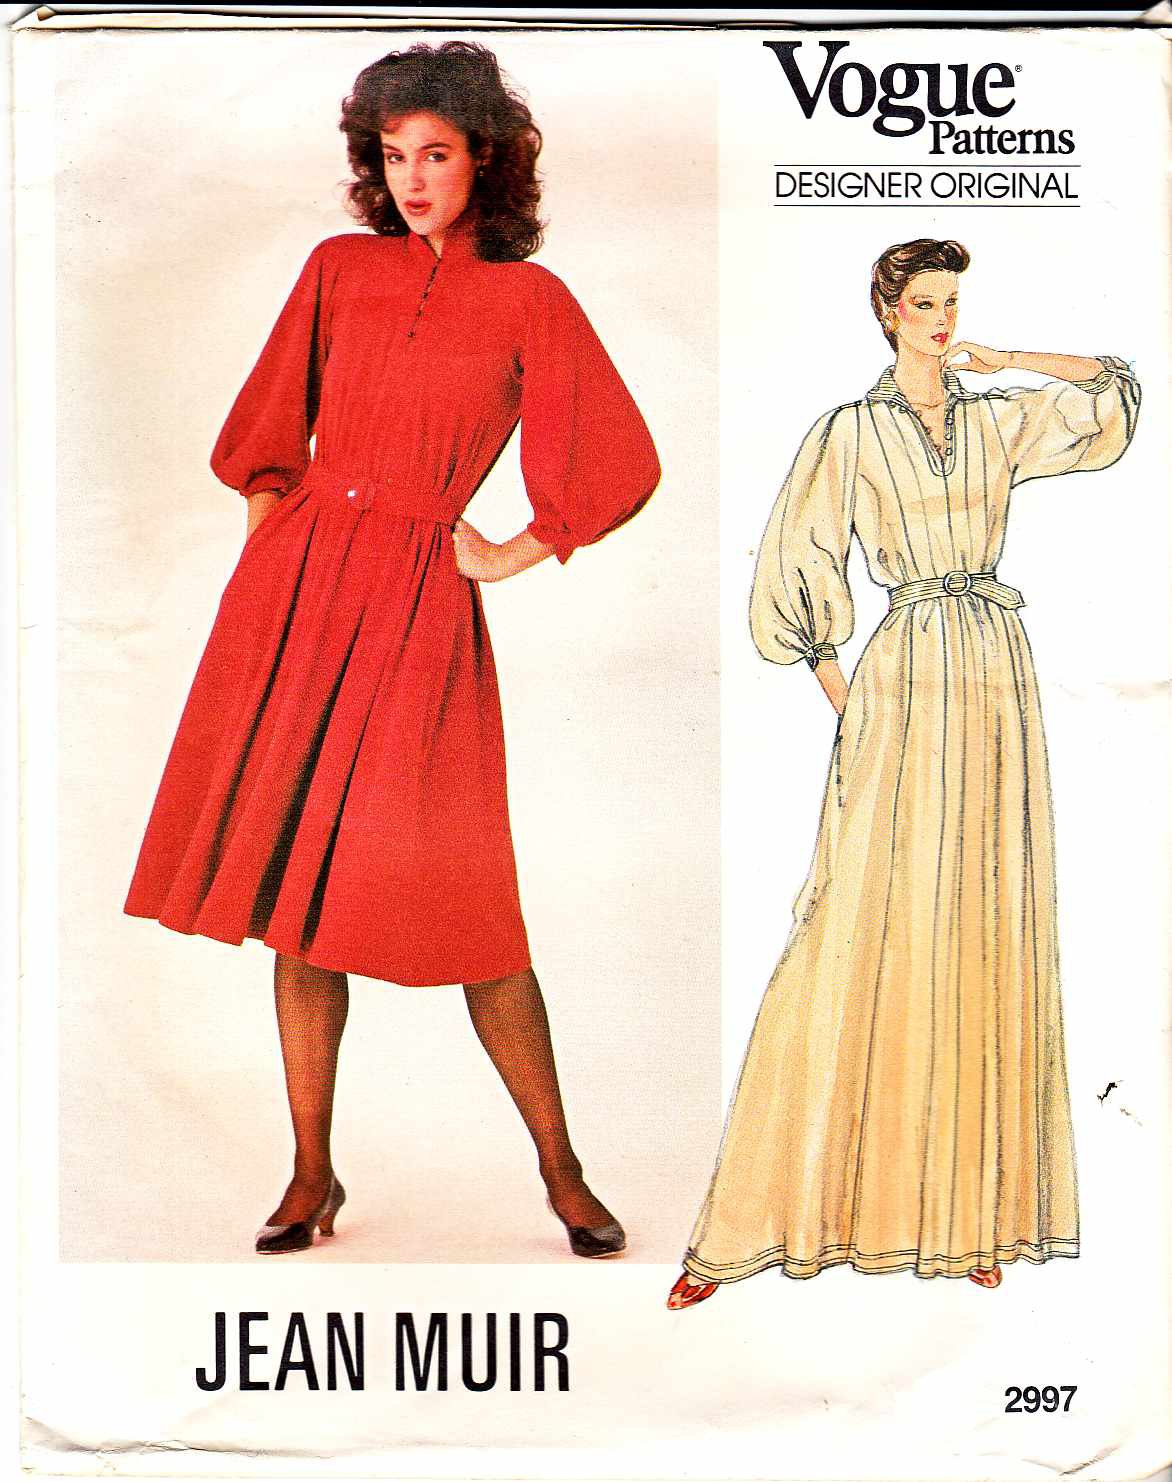 Vogue Sewing Pattern 2997 Misses Size 10 Jean Muir Designer Original ...